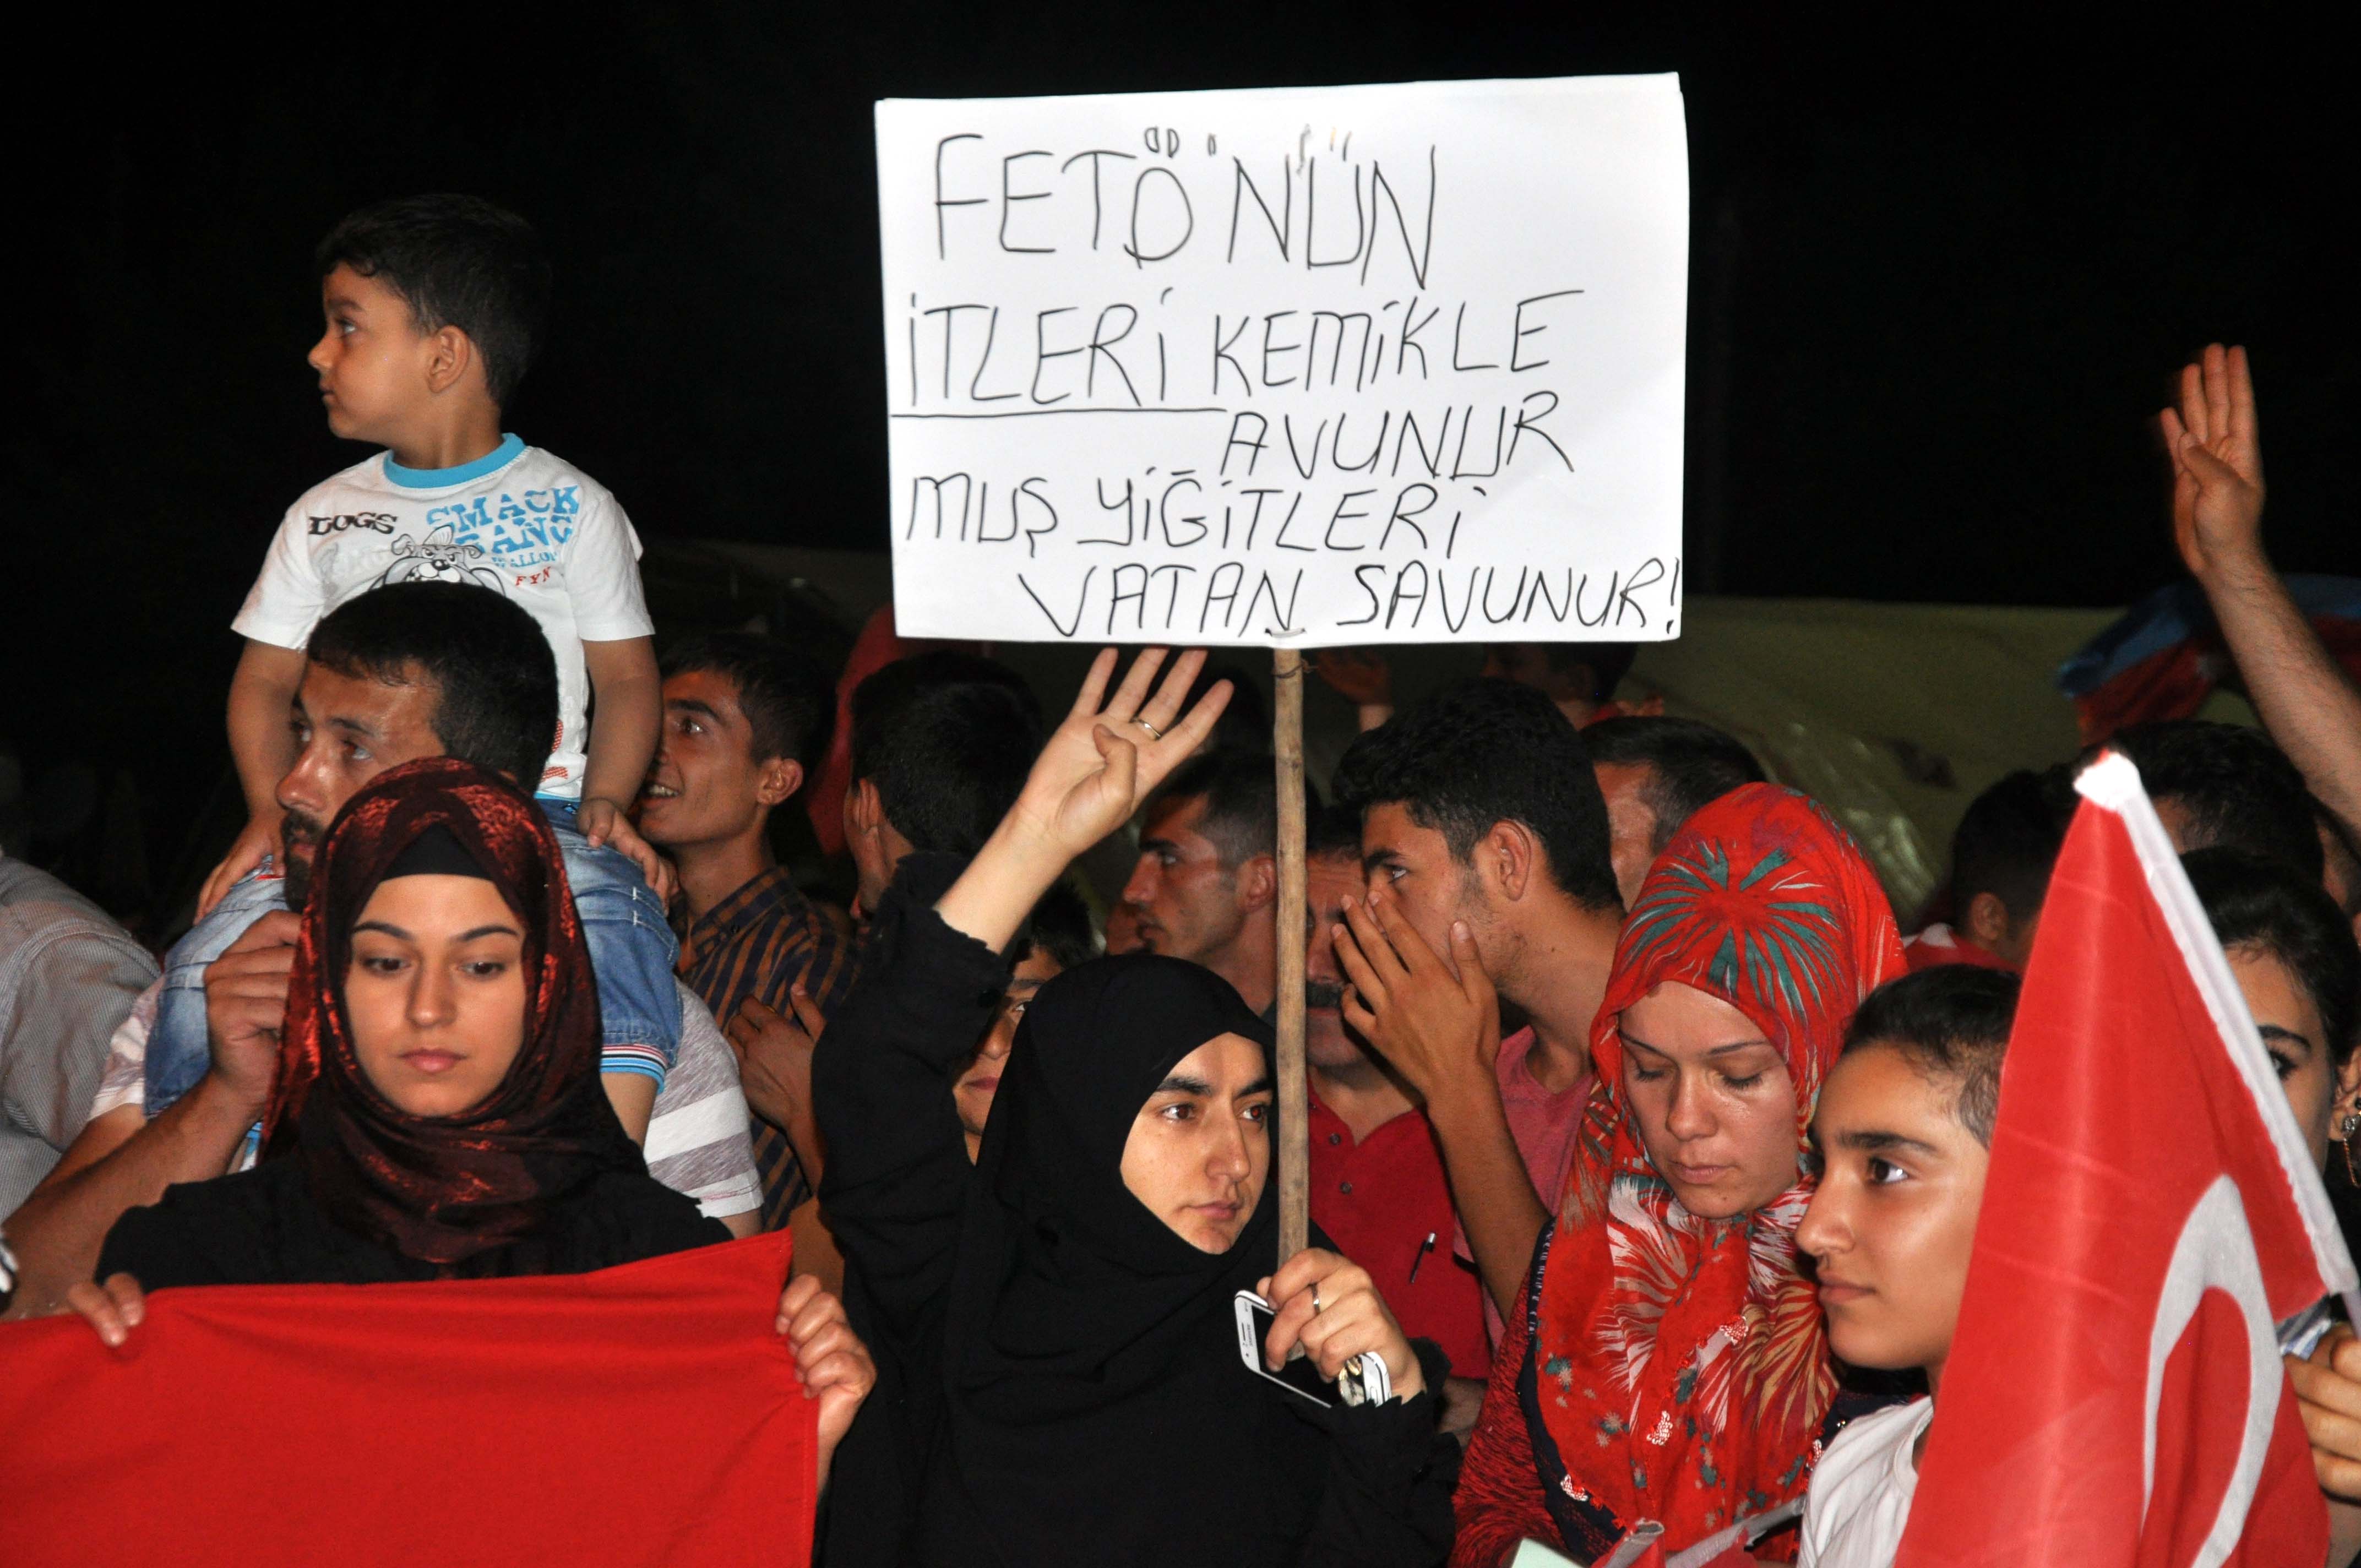 عبر المواطنون المشاركون في نوبات حراسة الديموقراطية عن آرائهم عن طريق اللافتات التي كتبوها.